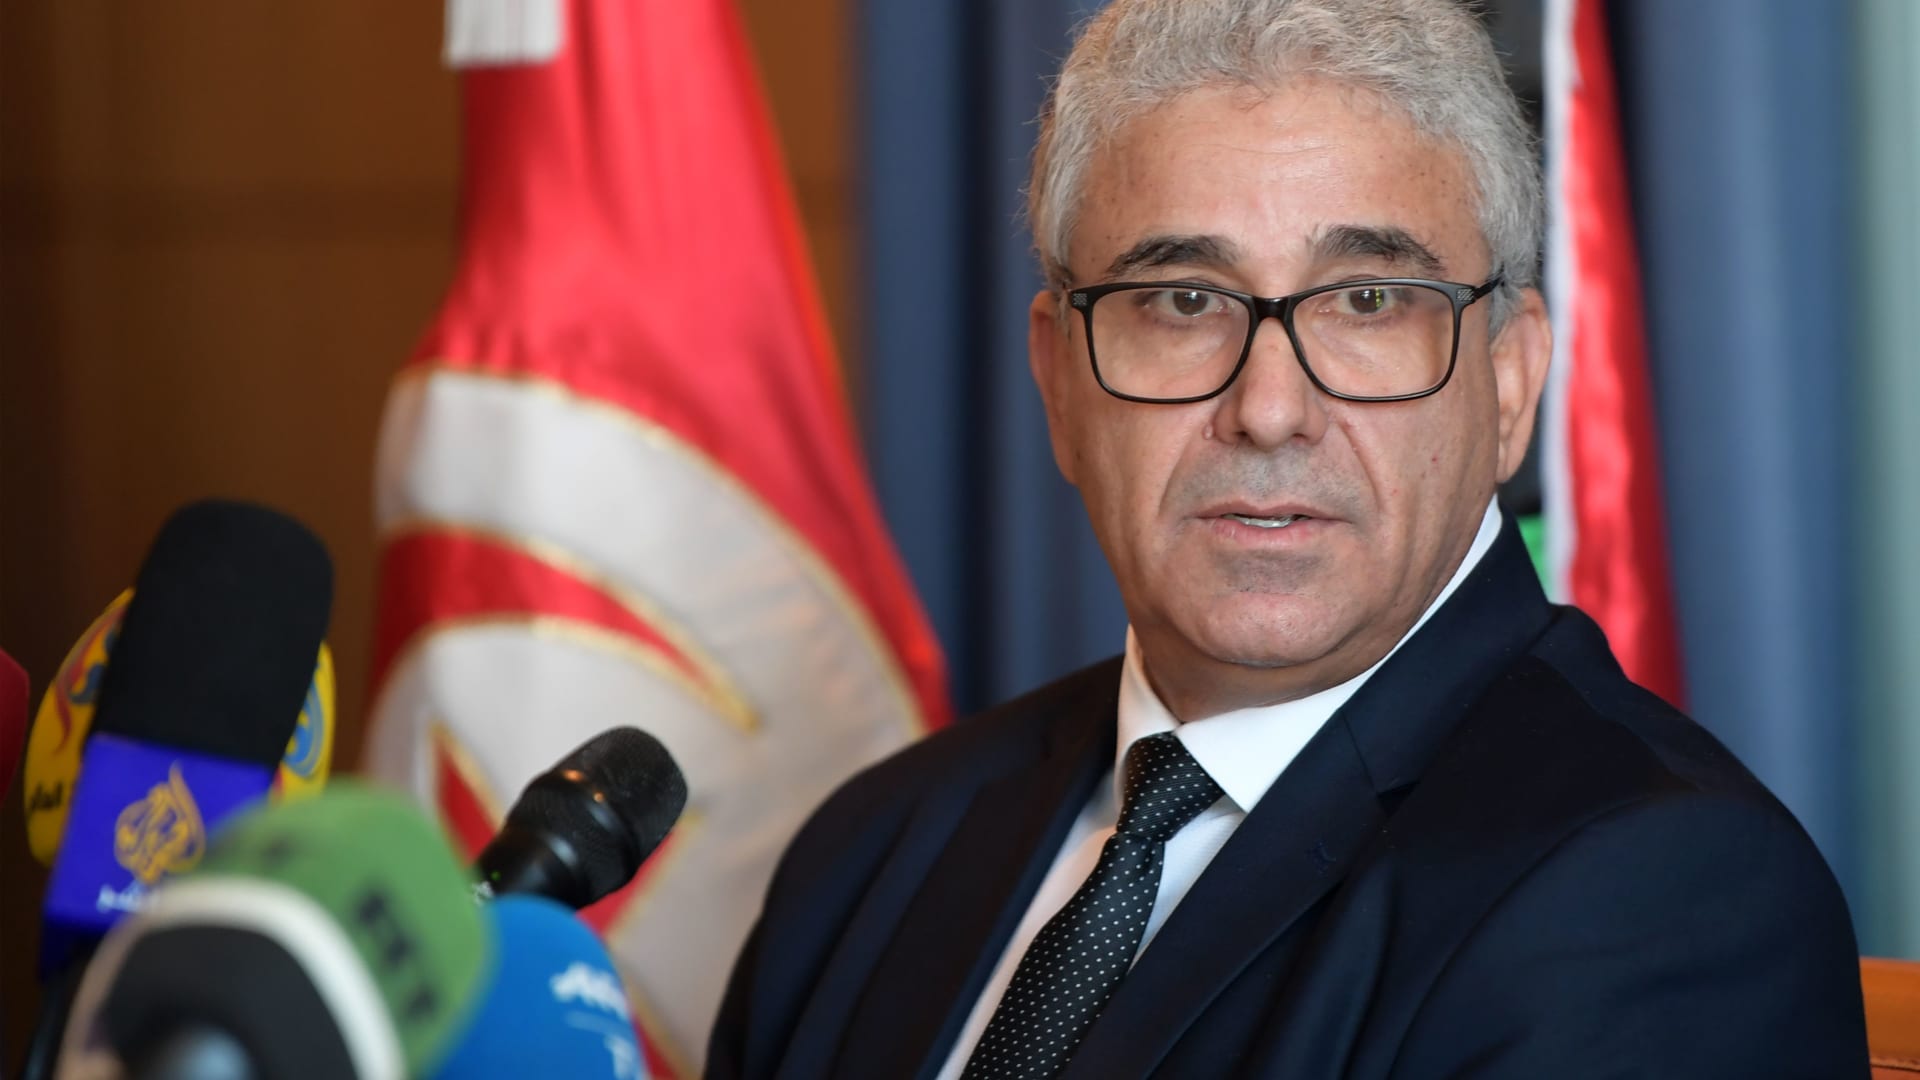 حكومة الوفاق: وقف وزير الداخلية.. والتحقيق معه في "تجاوزات" مظاهرات طرابلس